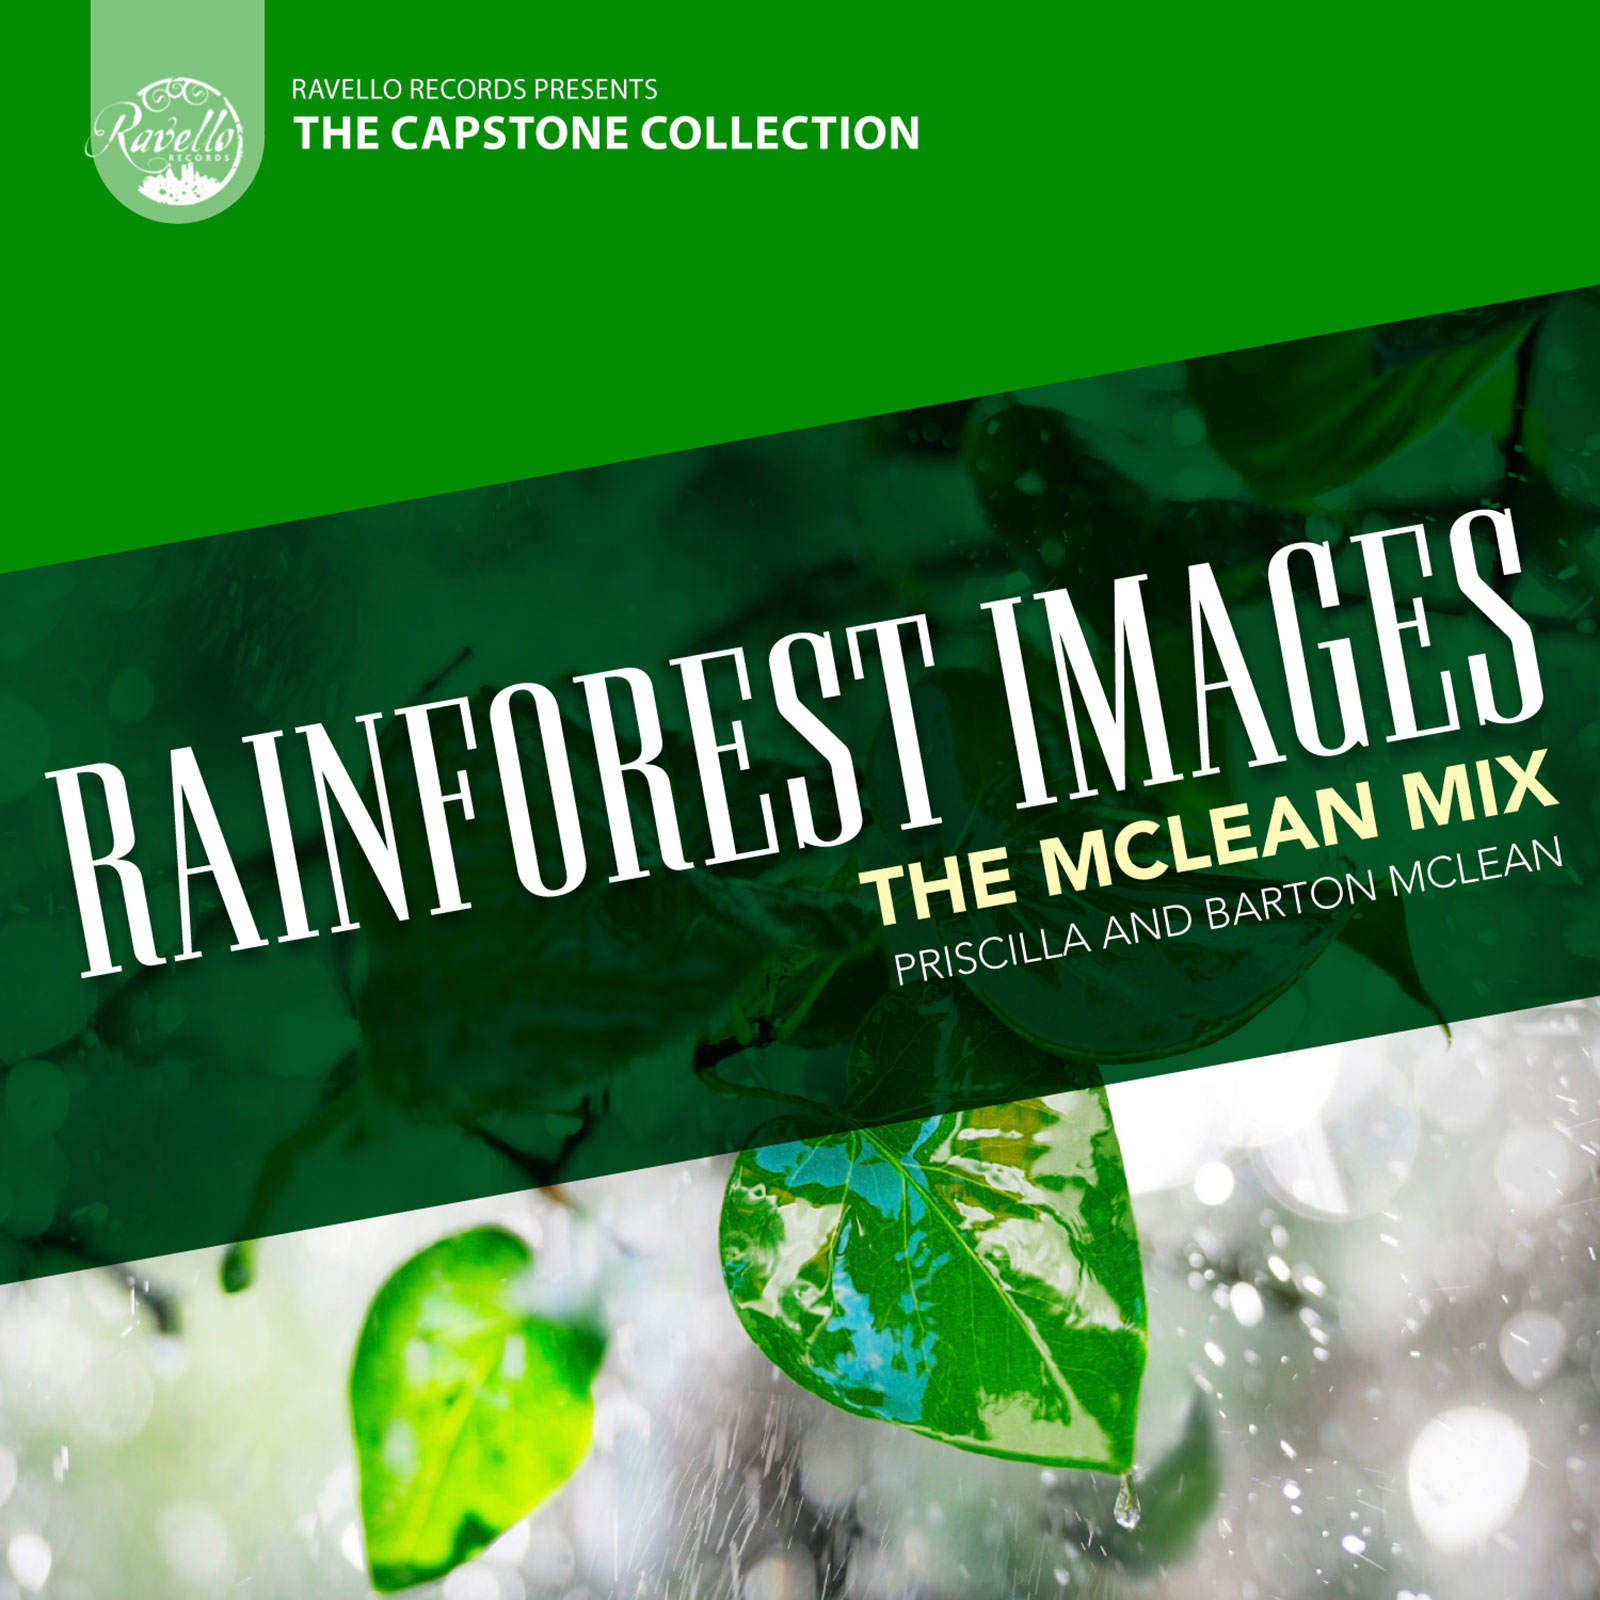 Rainforest Images